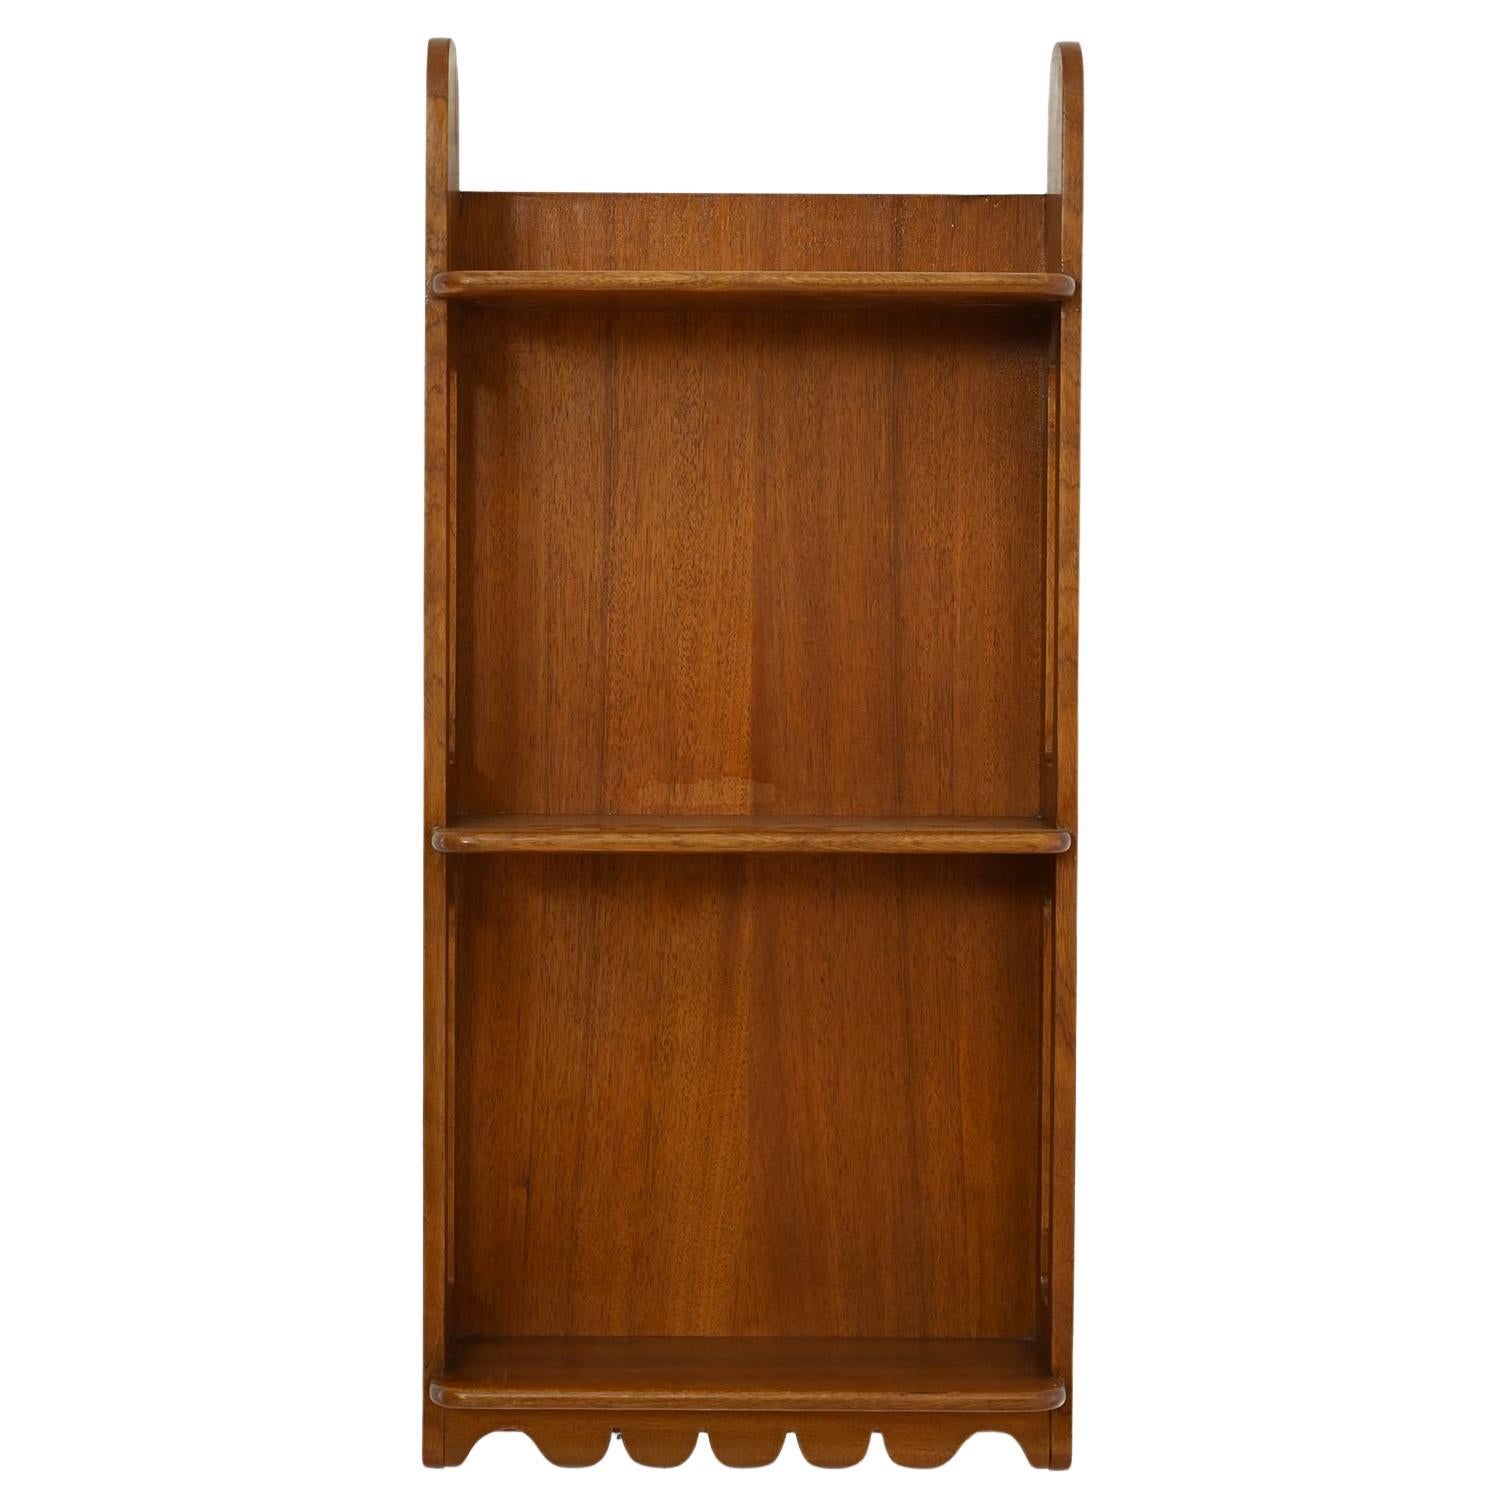 Suspended bookcase designed by Josef Frank manufactured by Svenskt Tenn 1950s